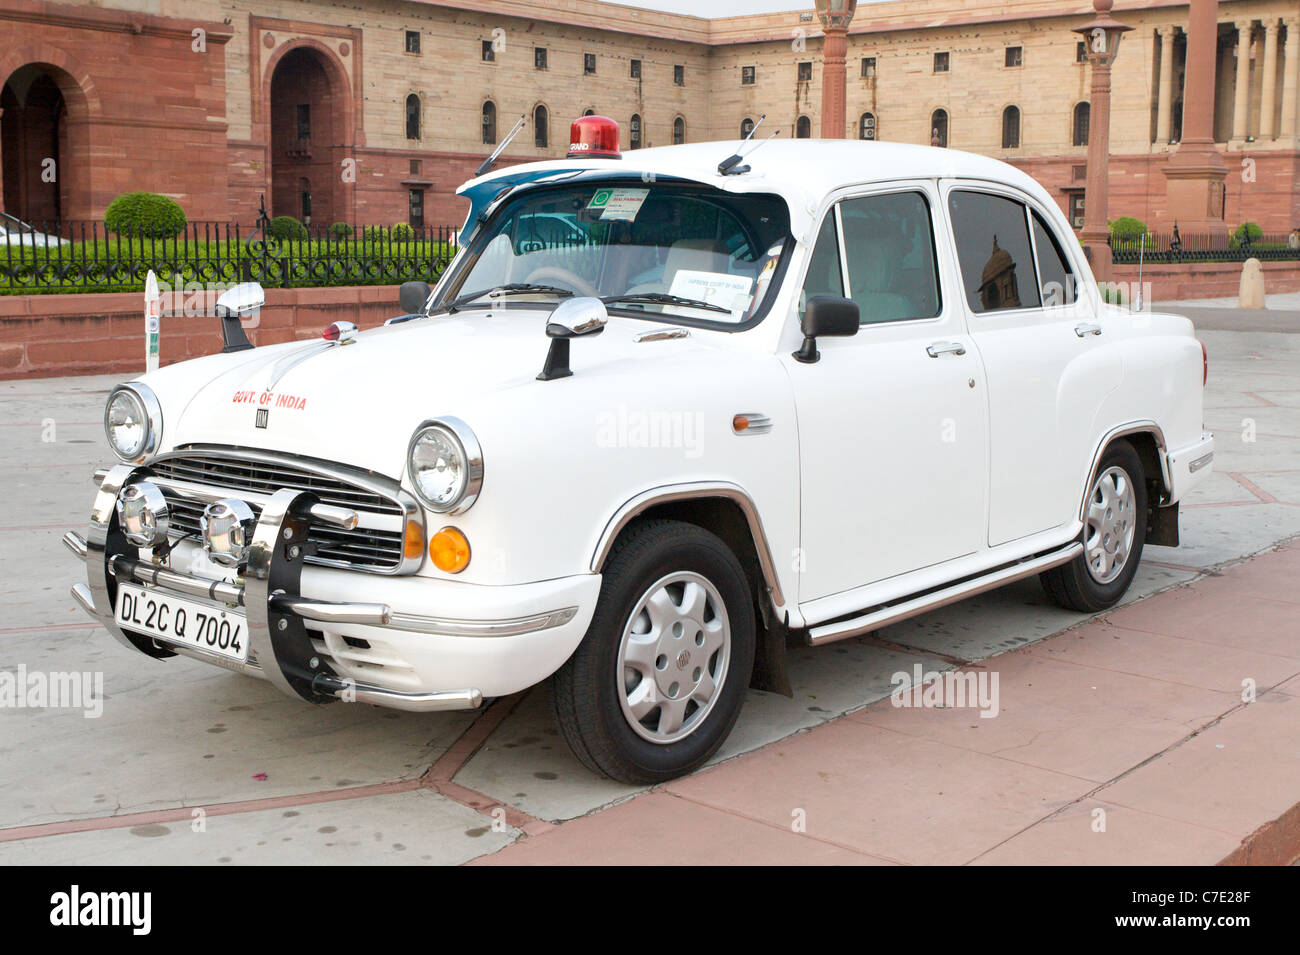 Eine ikonische Hindustan Ambassador Auto außerhalb der indischen Regierung Gebäude in Neu-Delhi, Indien Stockfoto